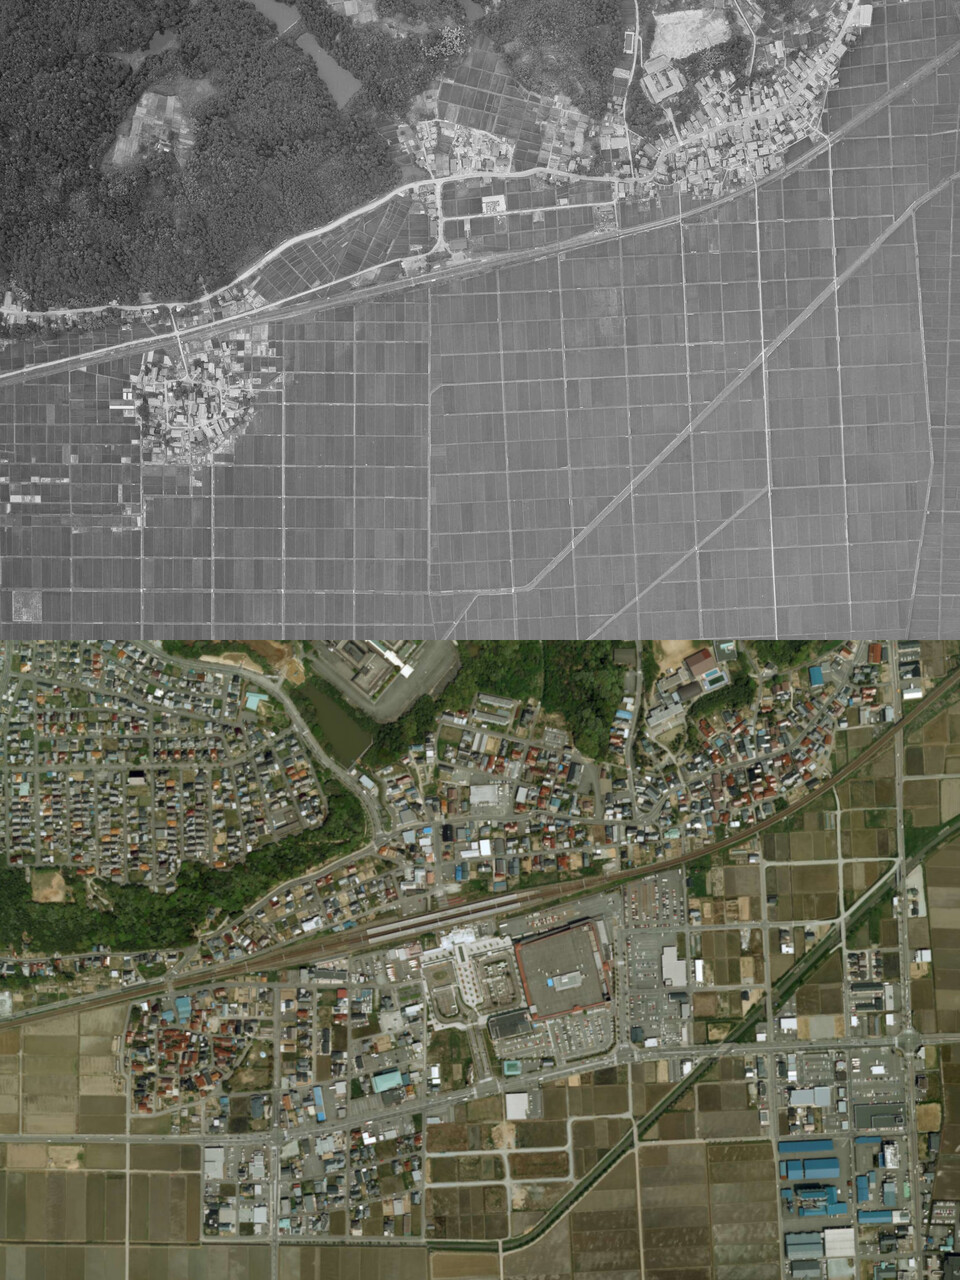 作見駅時代の航空写真（上、1963年撮影）と、加賀温泉駅の航空写真（下、2009年撮影）。現在は南側（画像下側）に、新幹線の線路・駅舎が建設されています（国土地理院の空中写真に加筆）